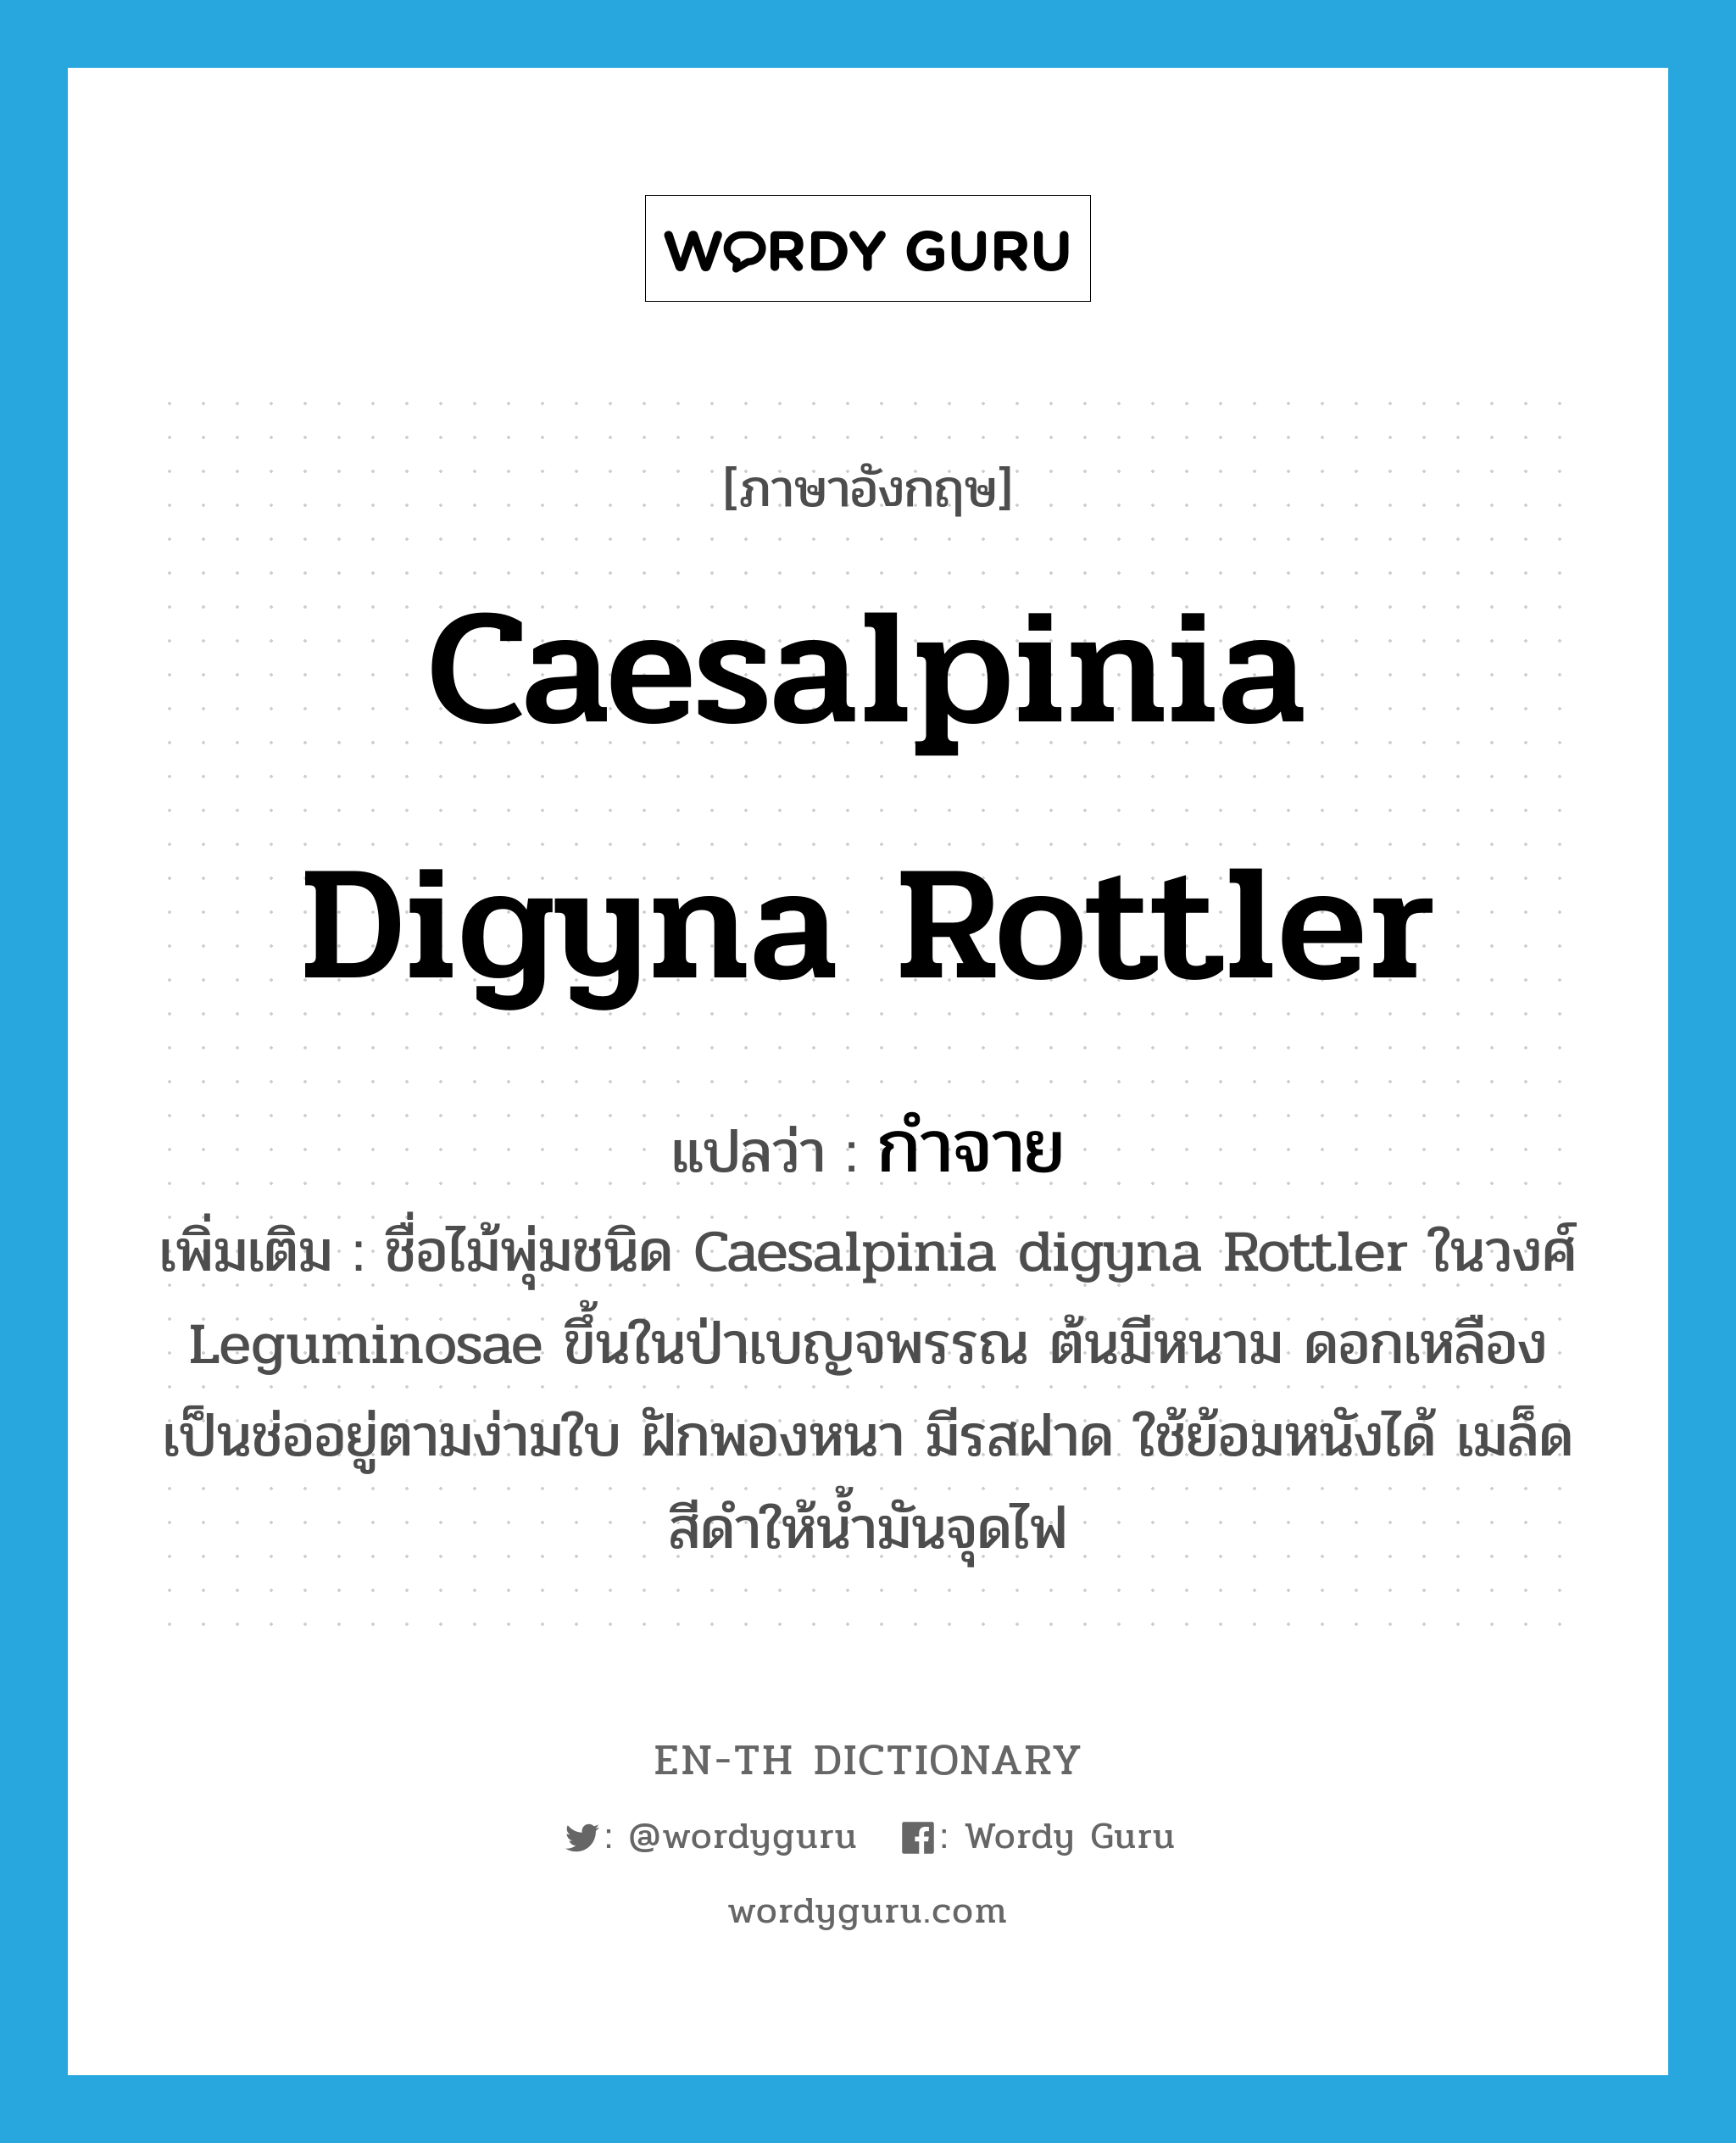 กำจาย ภาษาอังกฤษ?, คำศัพท์ภาษาอังกฤษ กำจาย แปลว่า Caesalpinia digyna Rottler ประเภท N เพิ่มเติม ชื่อไม้พุ่มชนิด Caesalpinia digyna Rottler ในวงศ์ Leguminosae ขึ้นในป่าเบญจพรรณ ต้นมีหนาม ดอกเหลืองเป็นช่ออยู่ตามง่ามใบ ฝักพองหนา มีรสฝาด ใช้ย้อมหนังได้ เมล็ดสีดำให้น้ำมันจุดไฟ หมวด N